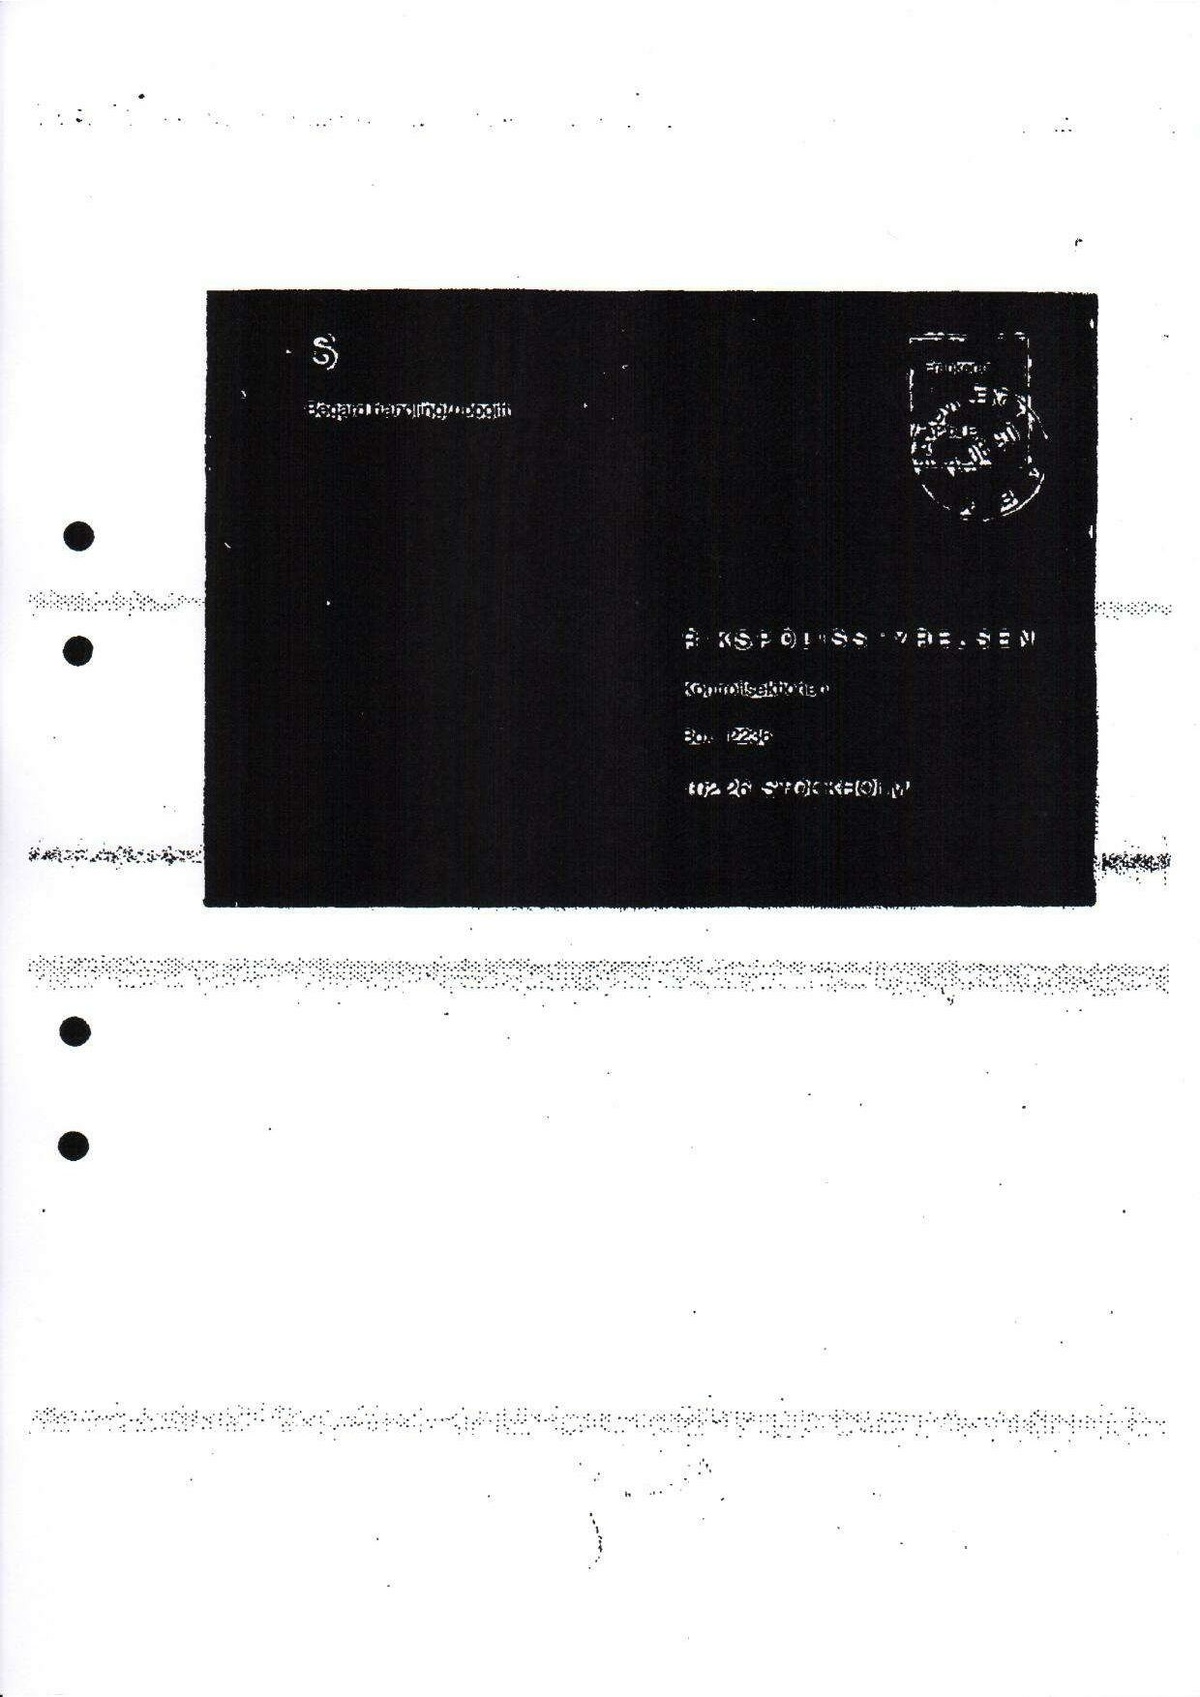 Pol-1990-08-17 D13301-00 Erkännanden Palmemordet.pdf